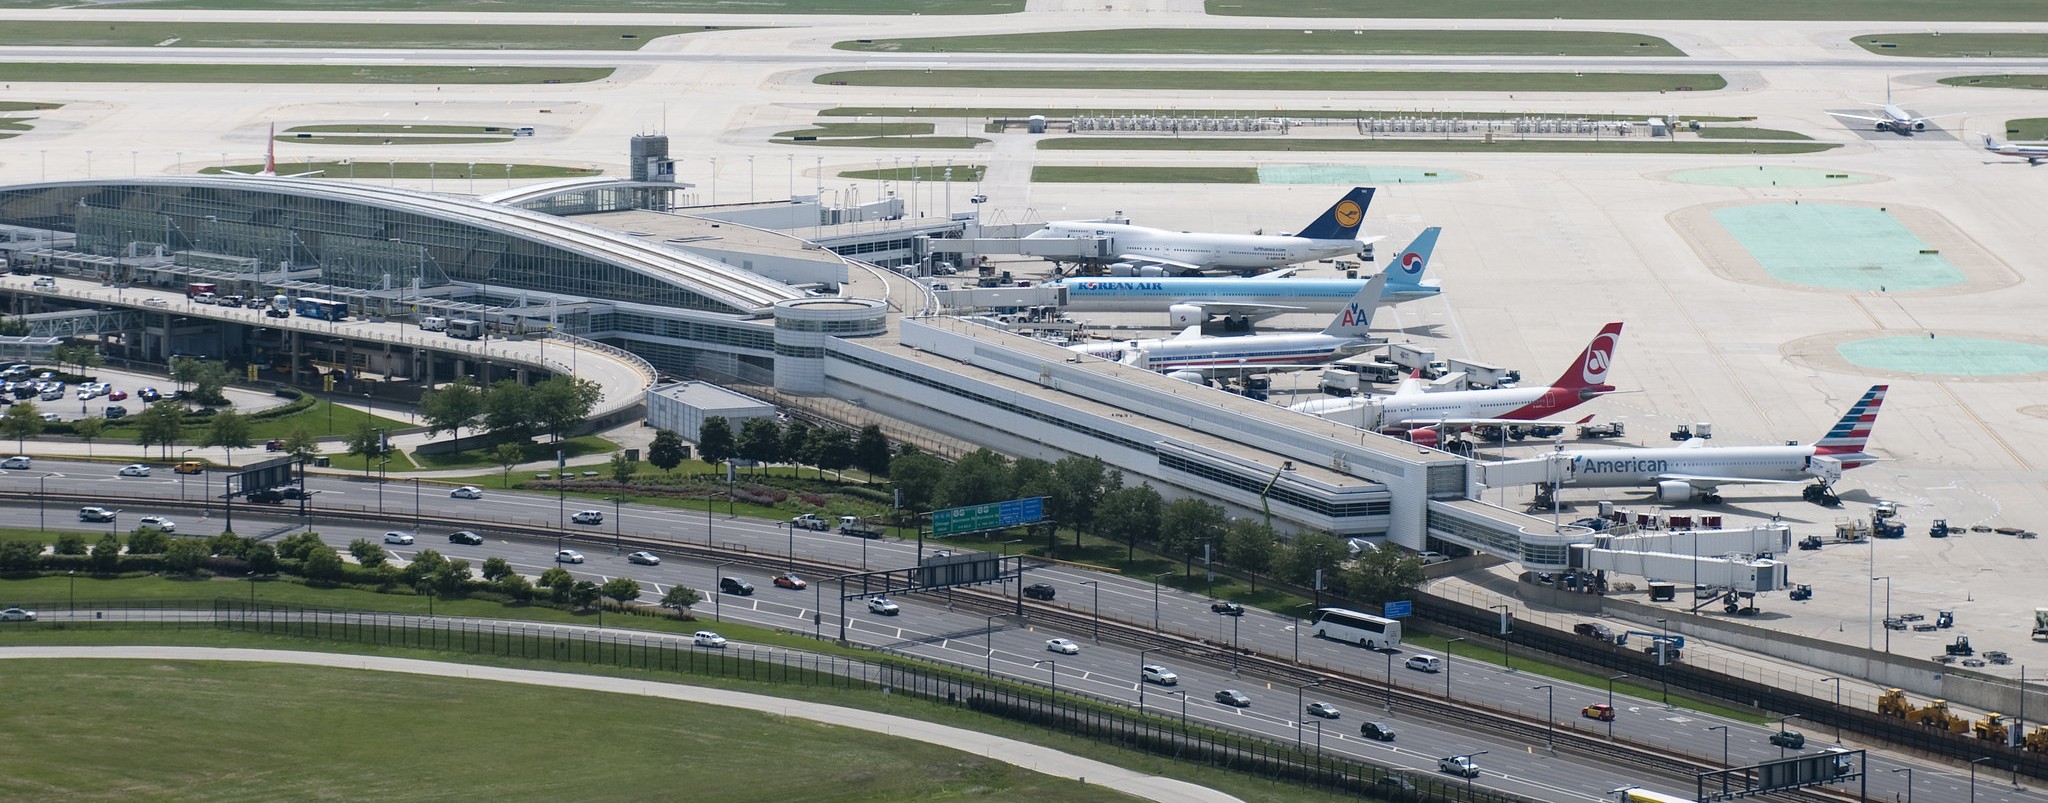 Aeroporto O'Hare de Chicago (Foto: Divulgação)